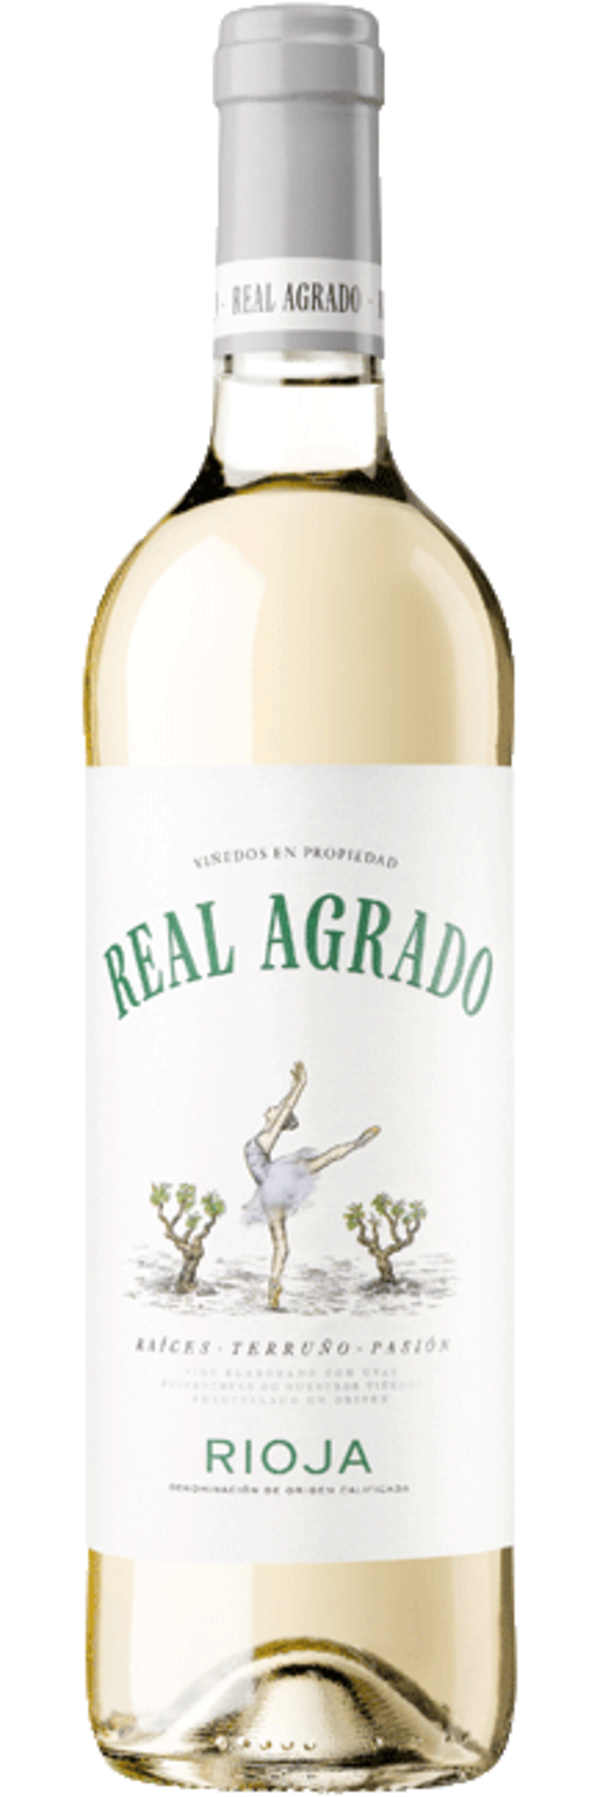 Real Agrado, Rioja Blanco 2021